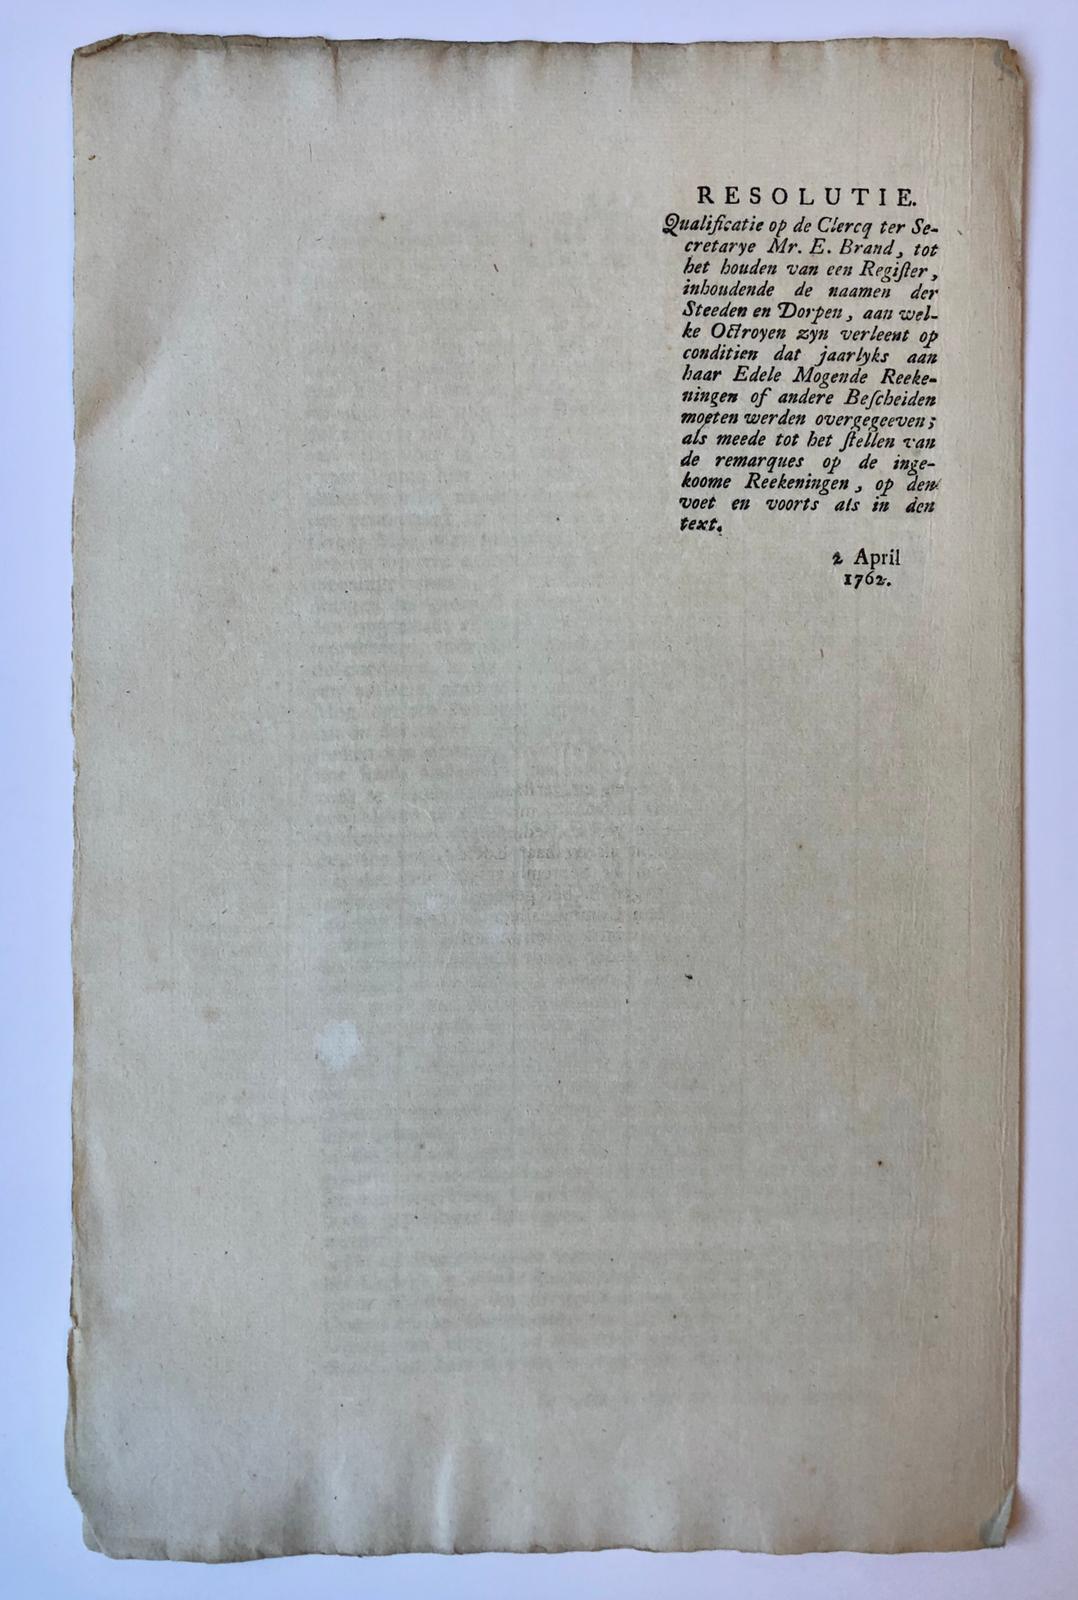 [PRINTED PUBLICATION, 1762, FIRE, BRAND] Extract uit resolutiën Staten van Holland dd 2-4-1762 betr. instructie voor de klerk Mr. E. Brand, 1 pag., folio, gedrukt.